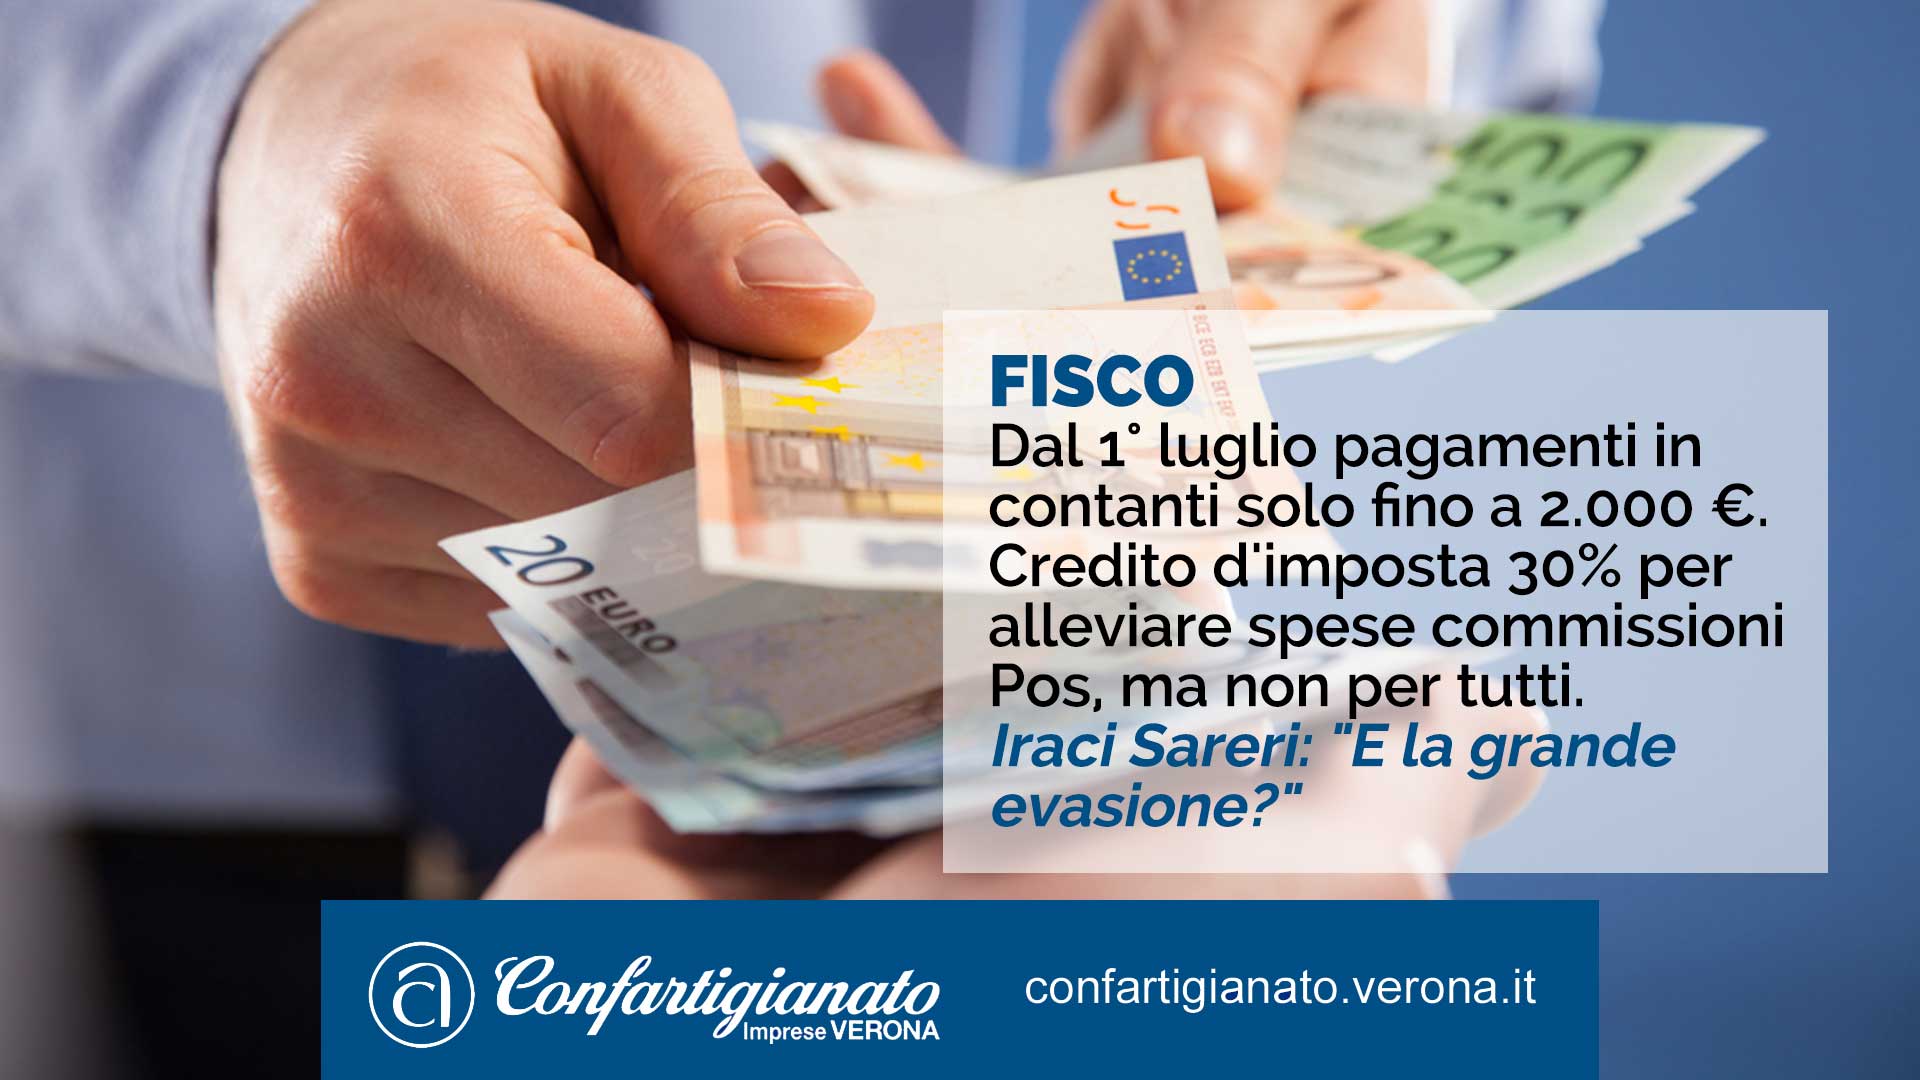 FISCO – Da luglio pagamenti in contatti solo fino a 2.000 euro. Credito d'imposta 30% per alleviare spese commissioni Pos. Iraci Sareri: "E la grande evasione?"